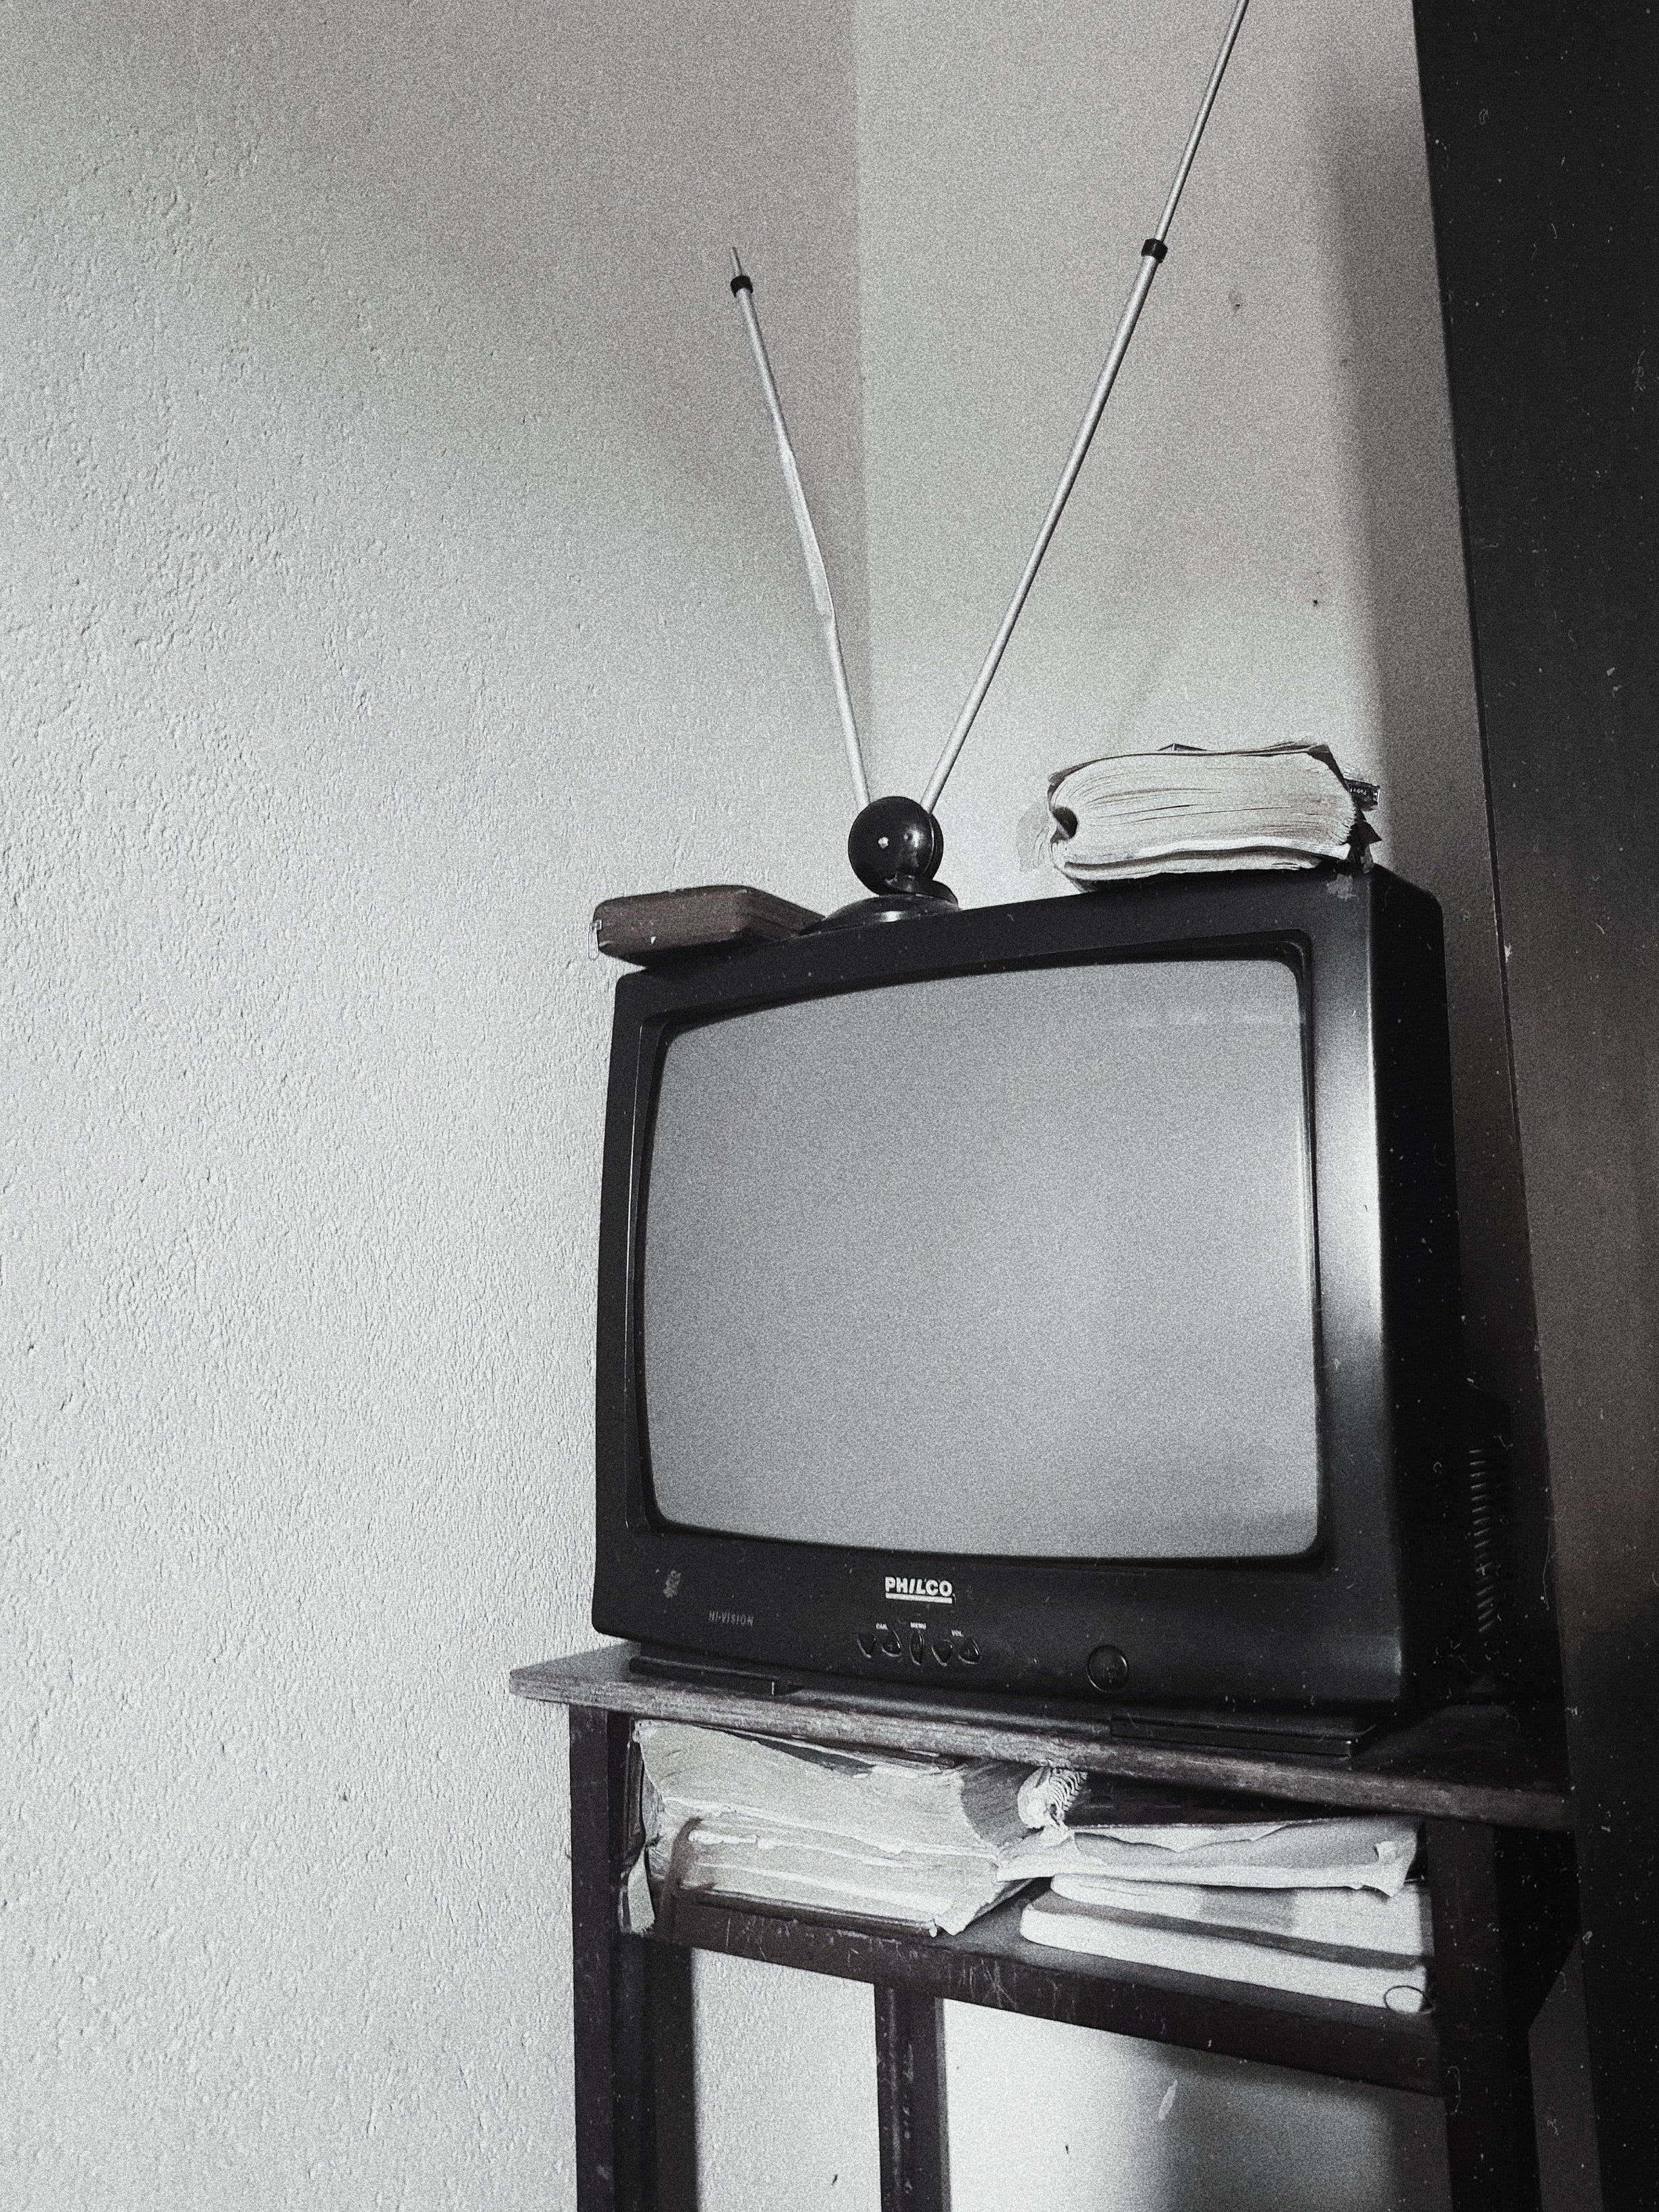 Televisor. | Foto: Pexels